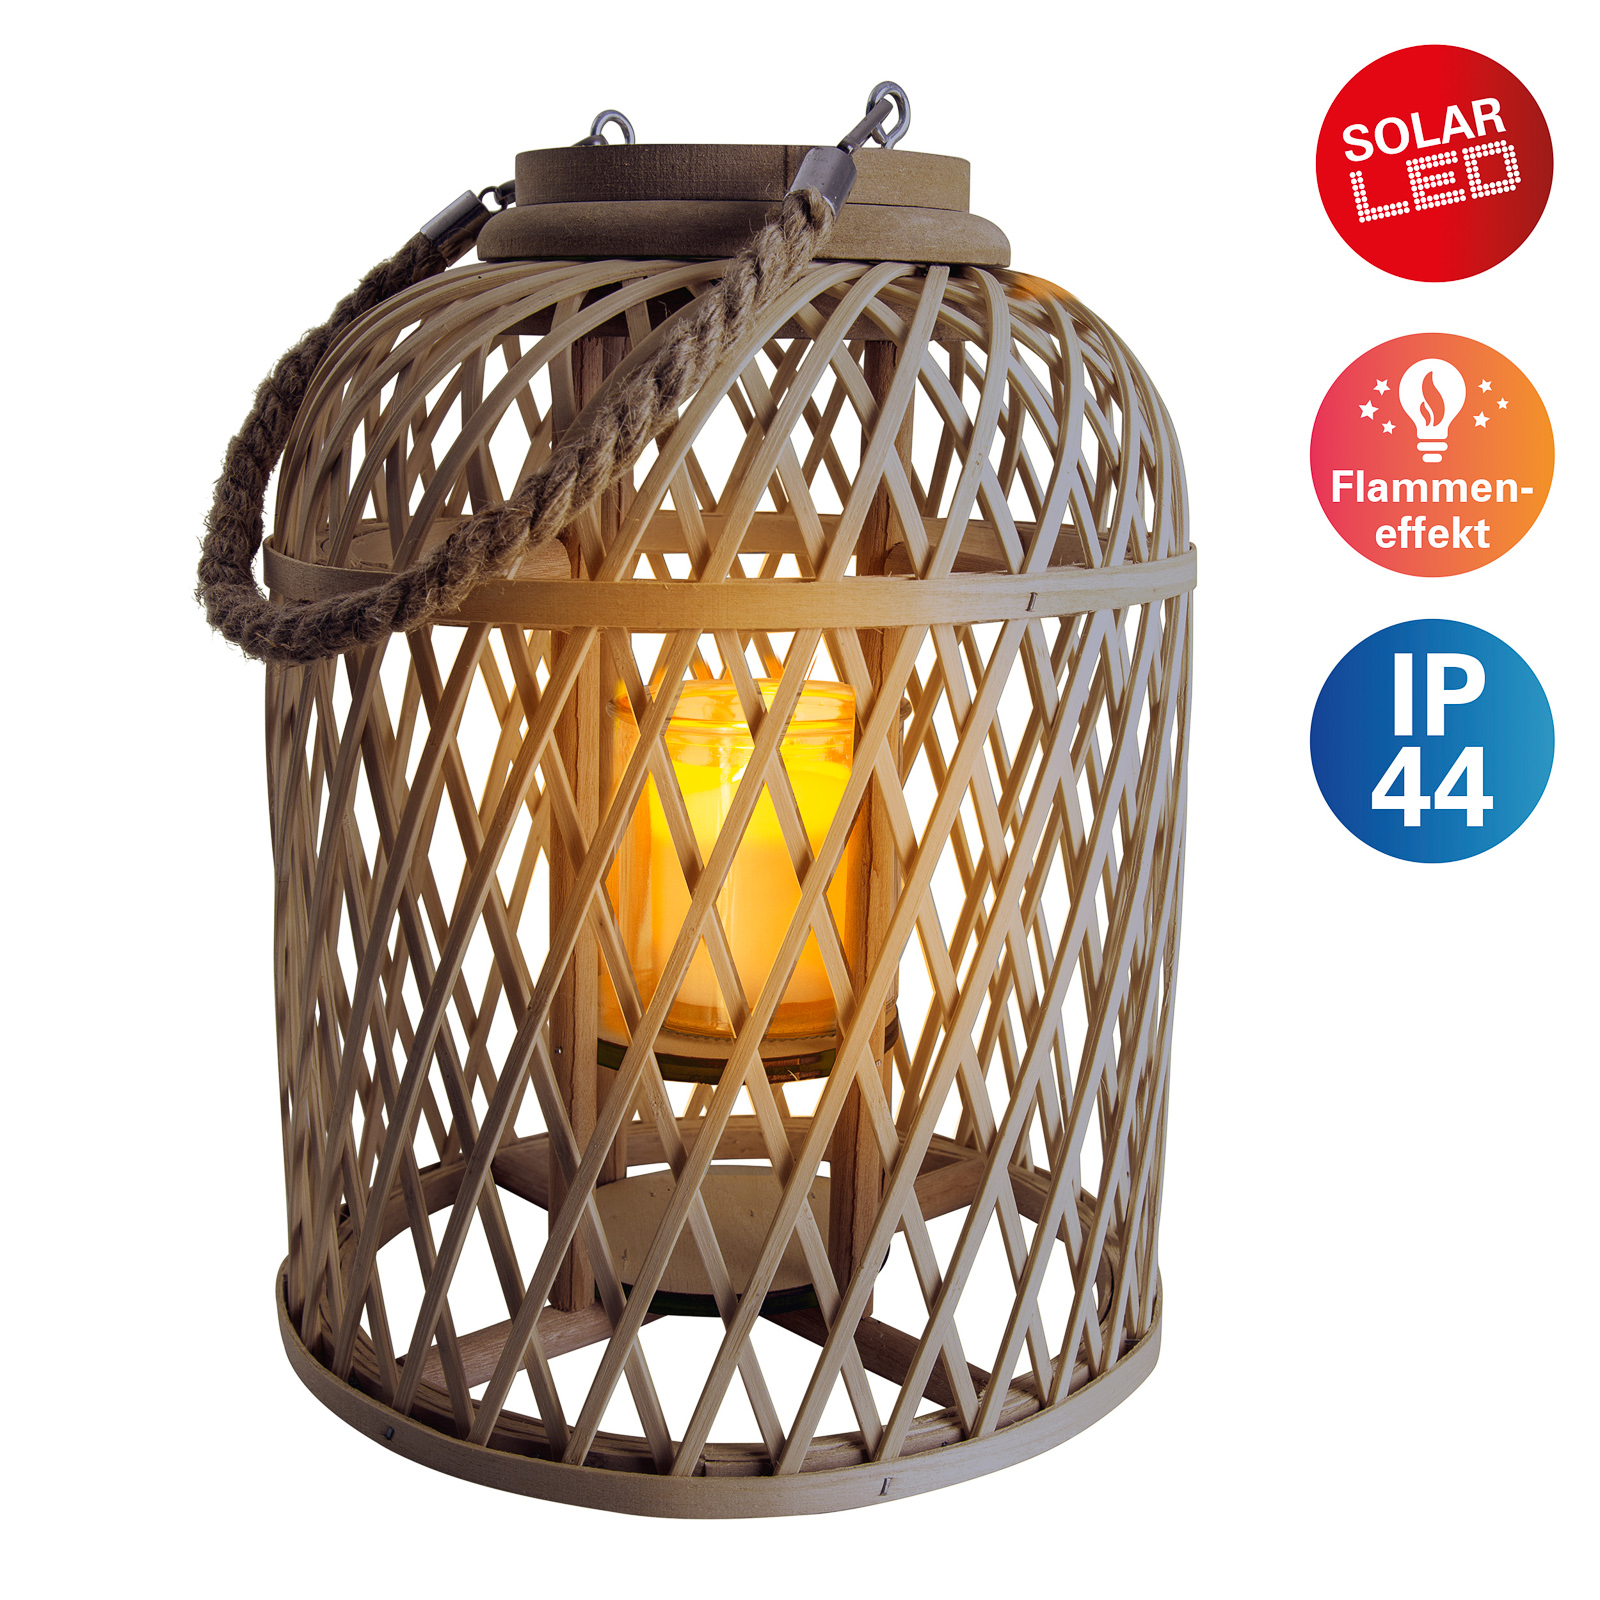 Basket LED solar lantern, bamboo, 29 cm, brown